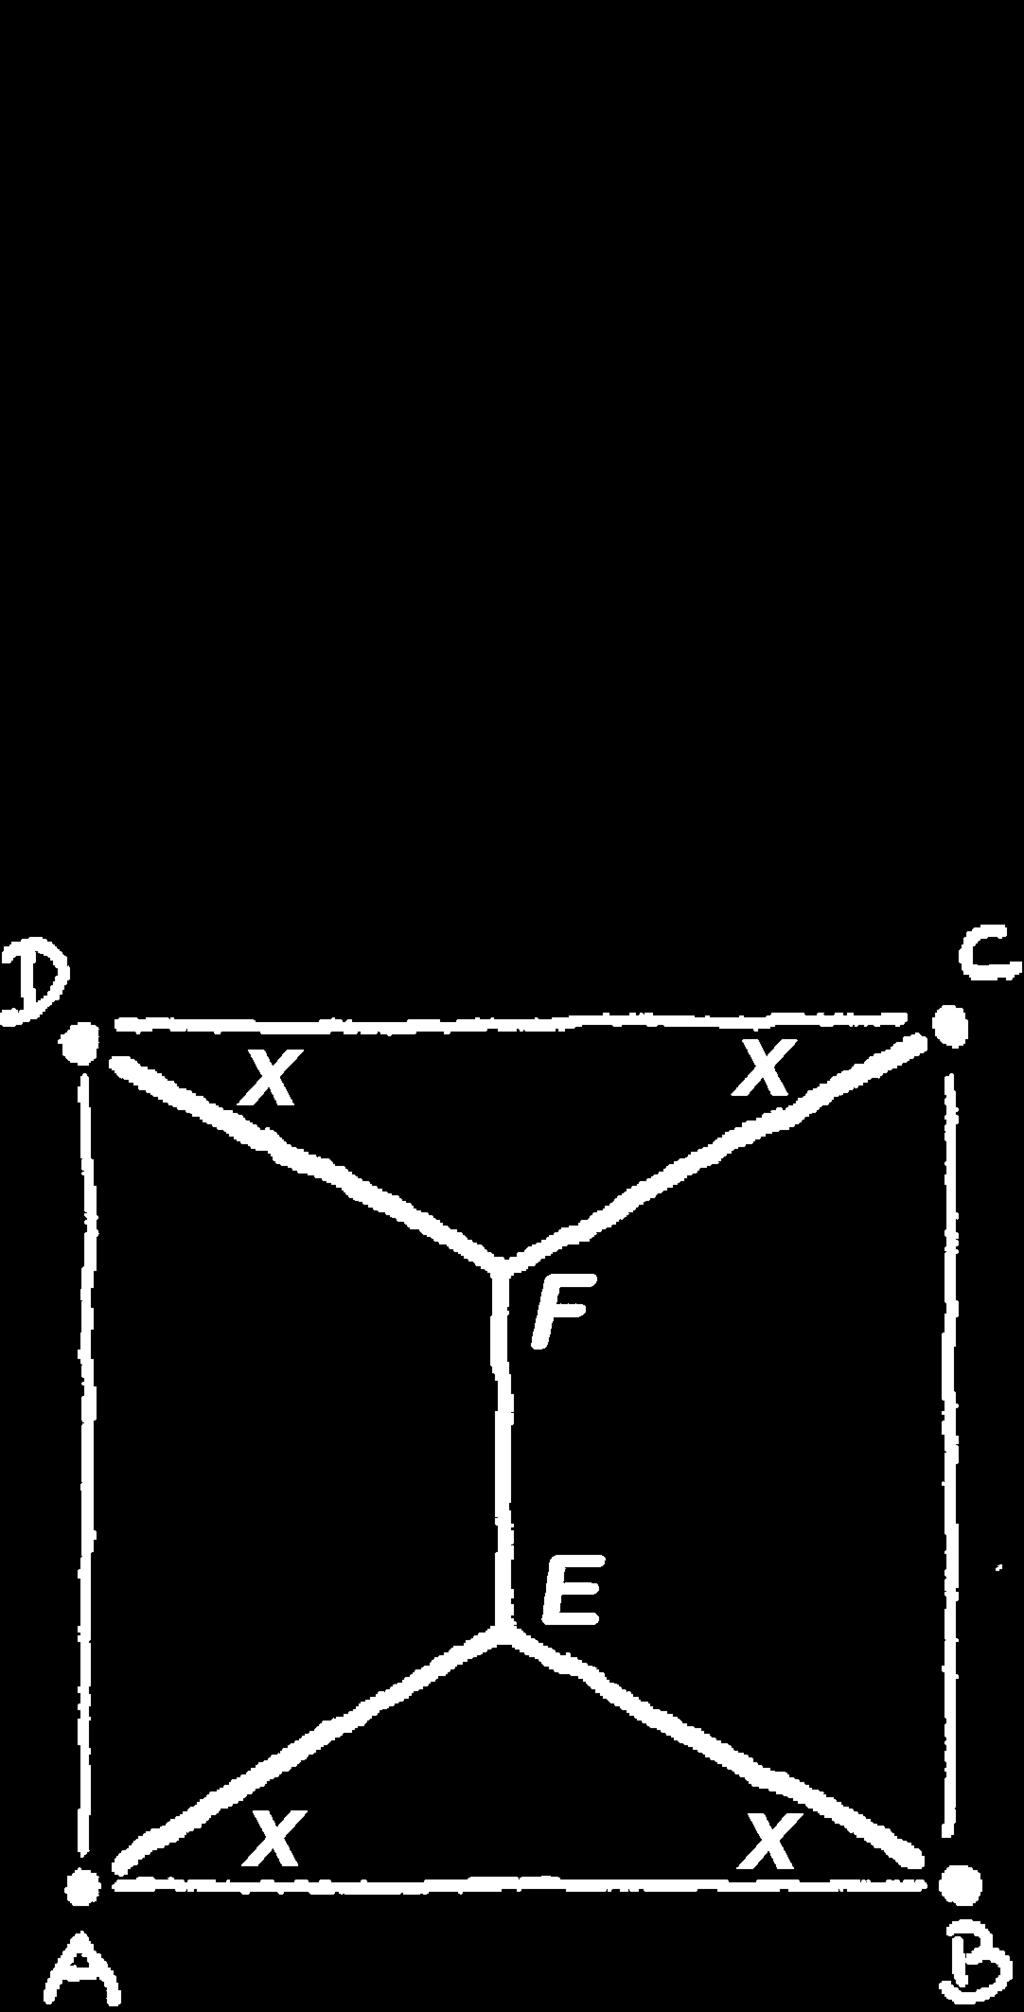 c Bereken voor welke x de oppervlakte van de doorsnede maximaal is.